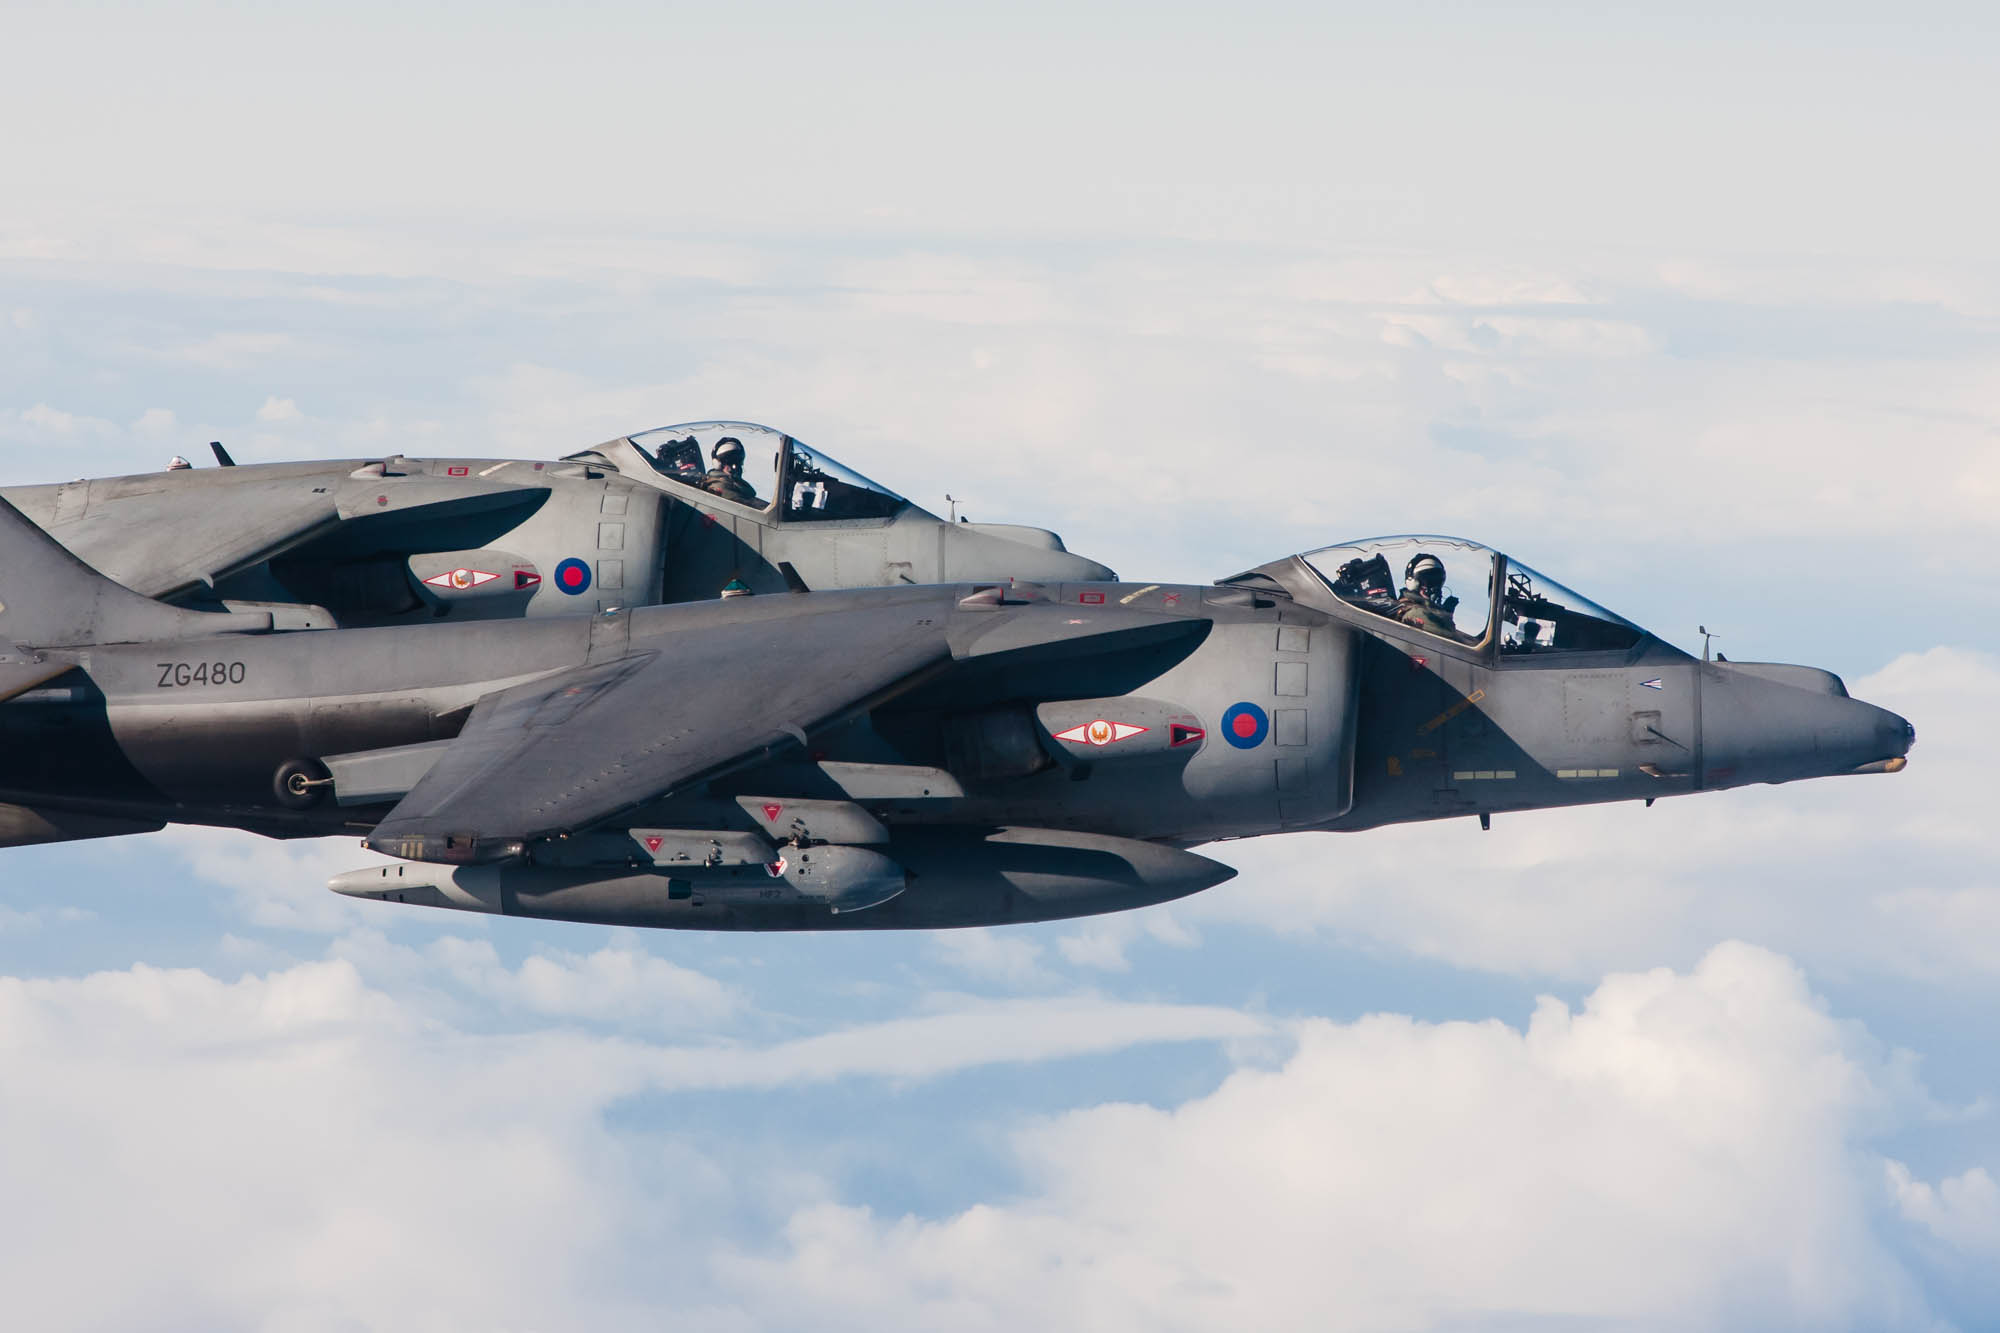 Harrier Air to Air